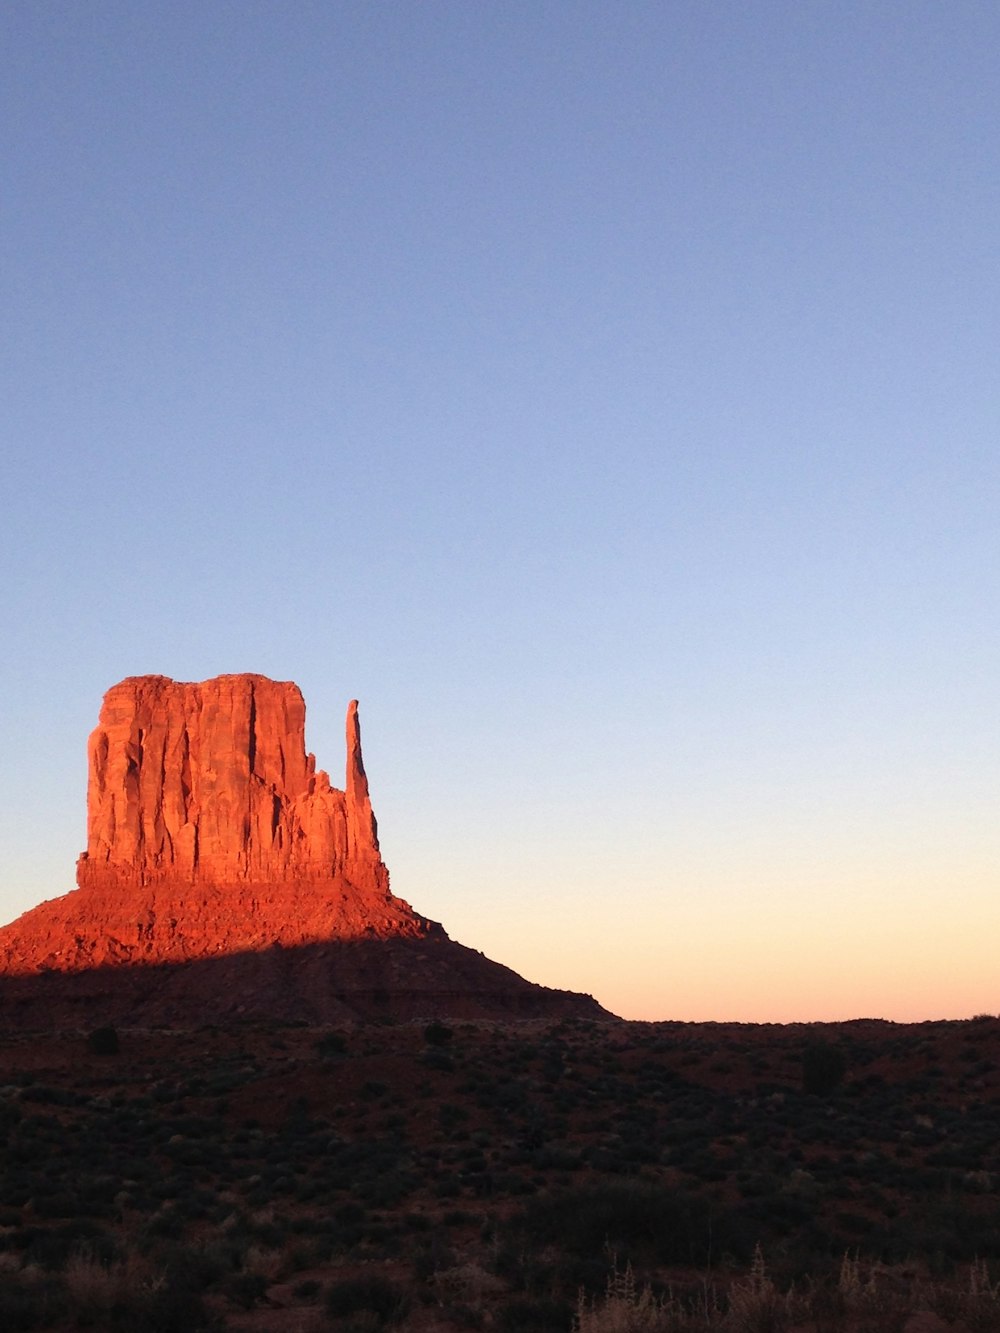 Una alta formación rocosa roja en medio de un desierto